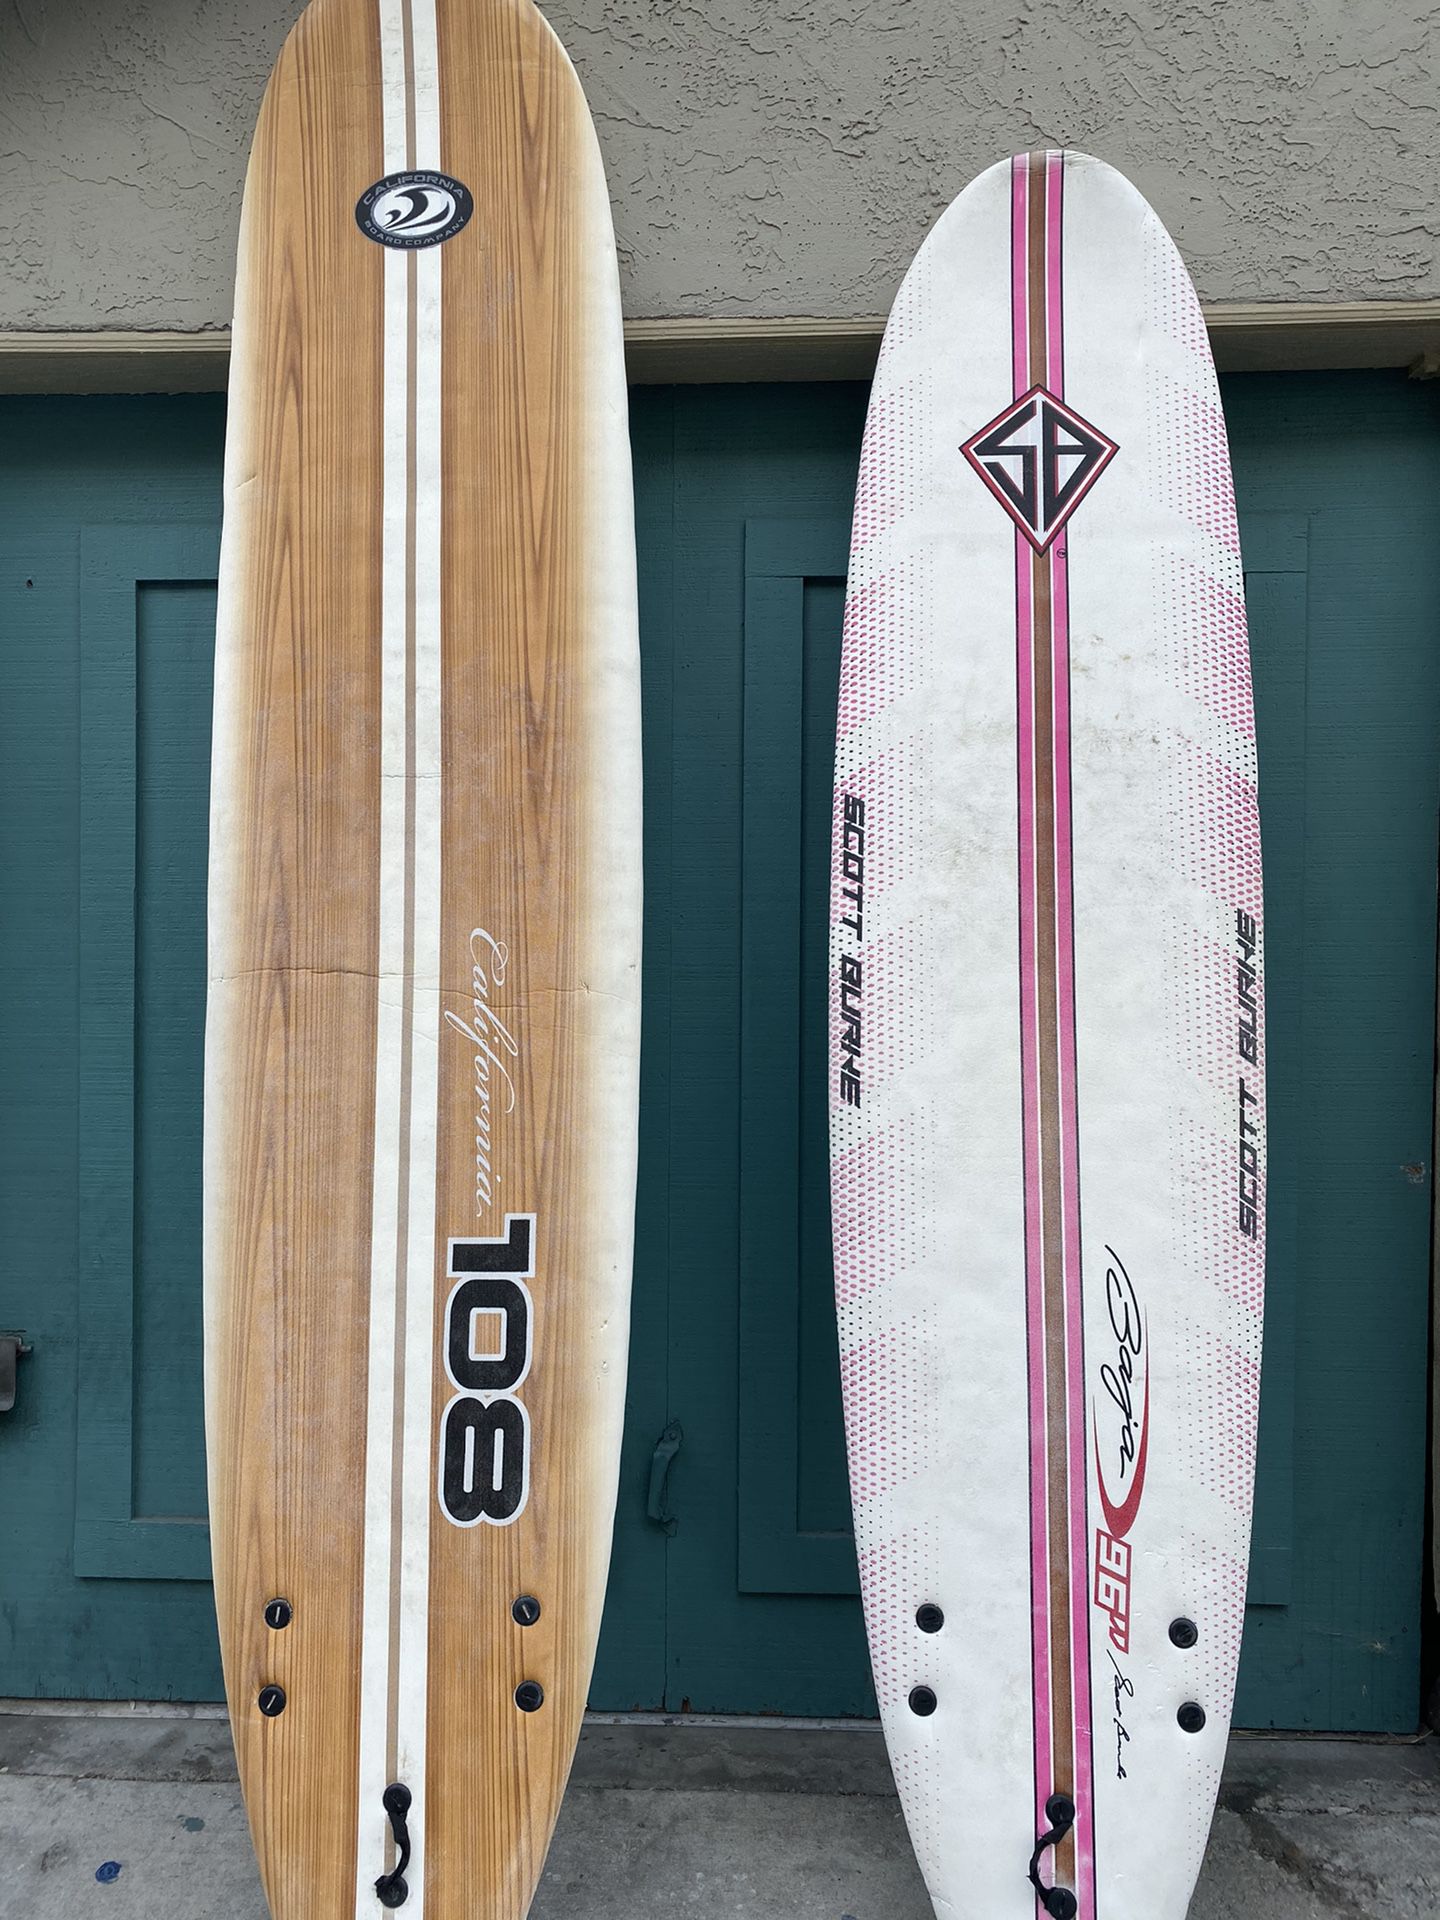 Two foam surfboards